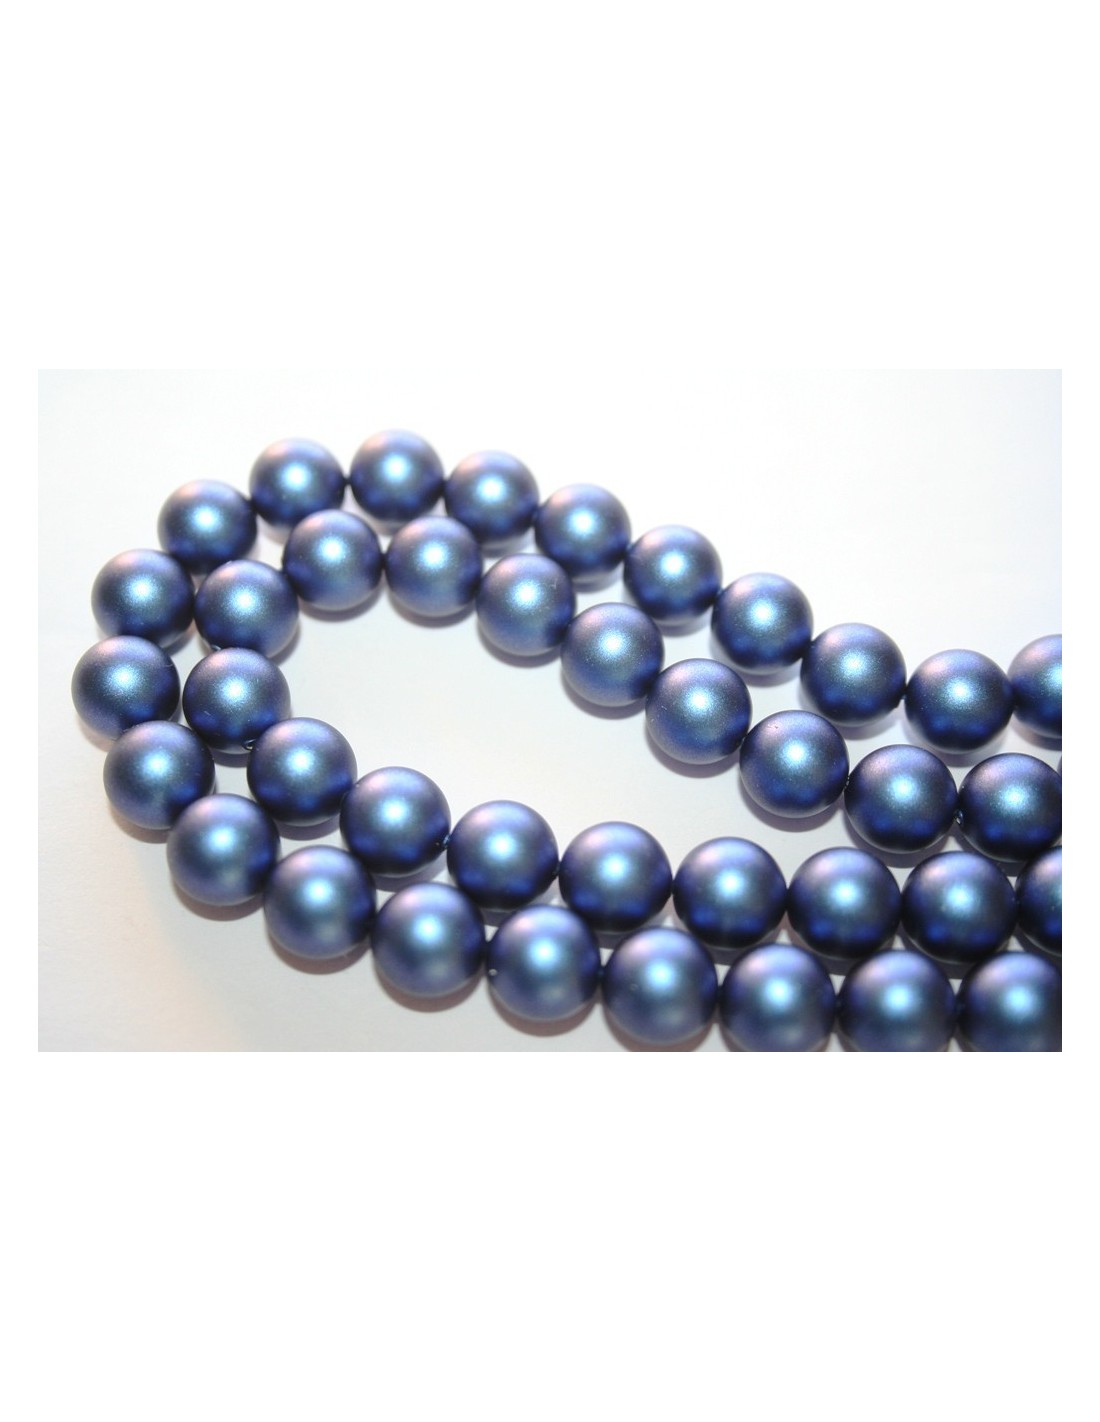 Swarovski Pearls 5810 Iridescent Dark Blue 10mm - Perlinebijoux